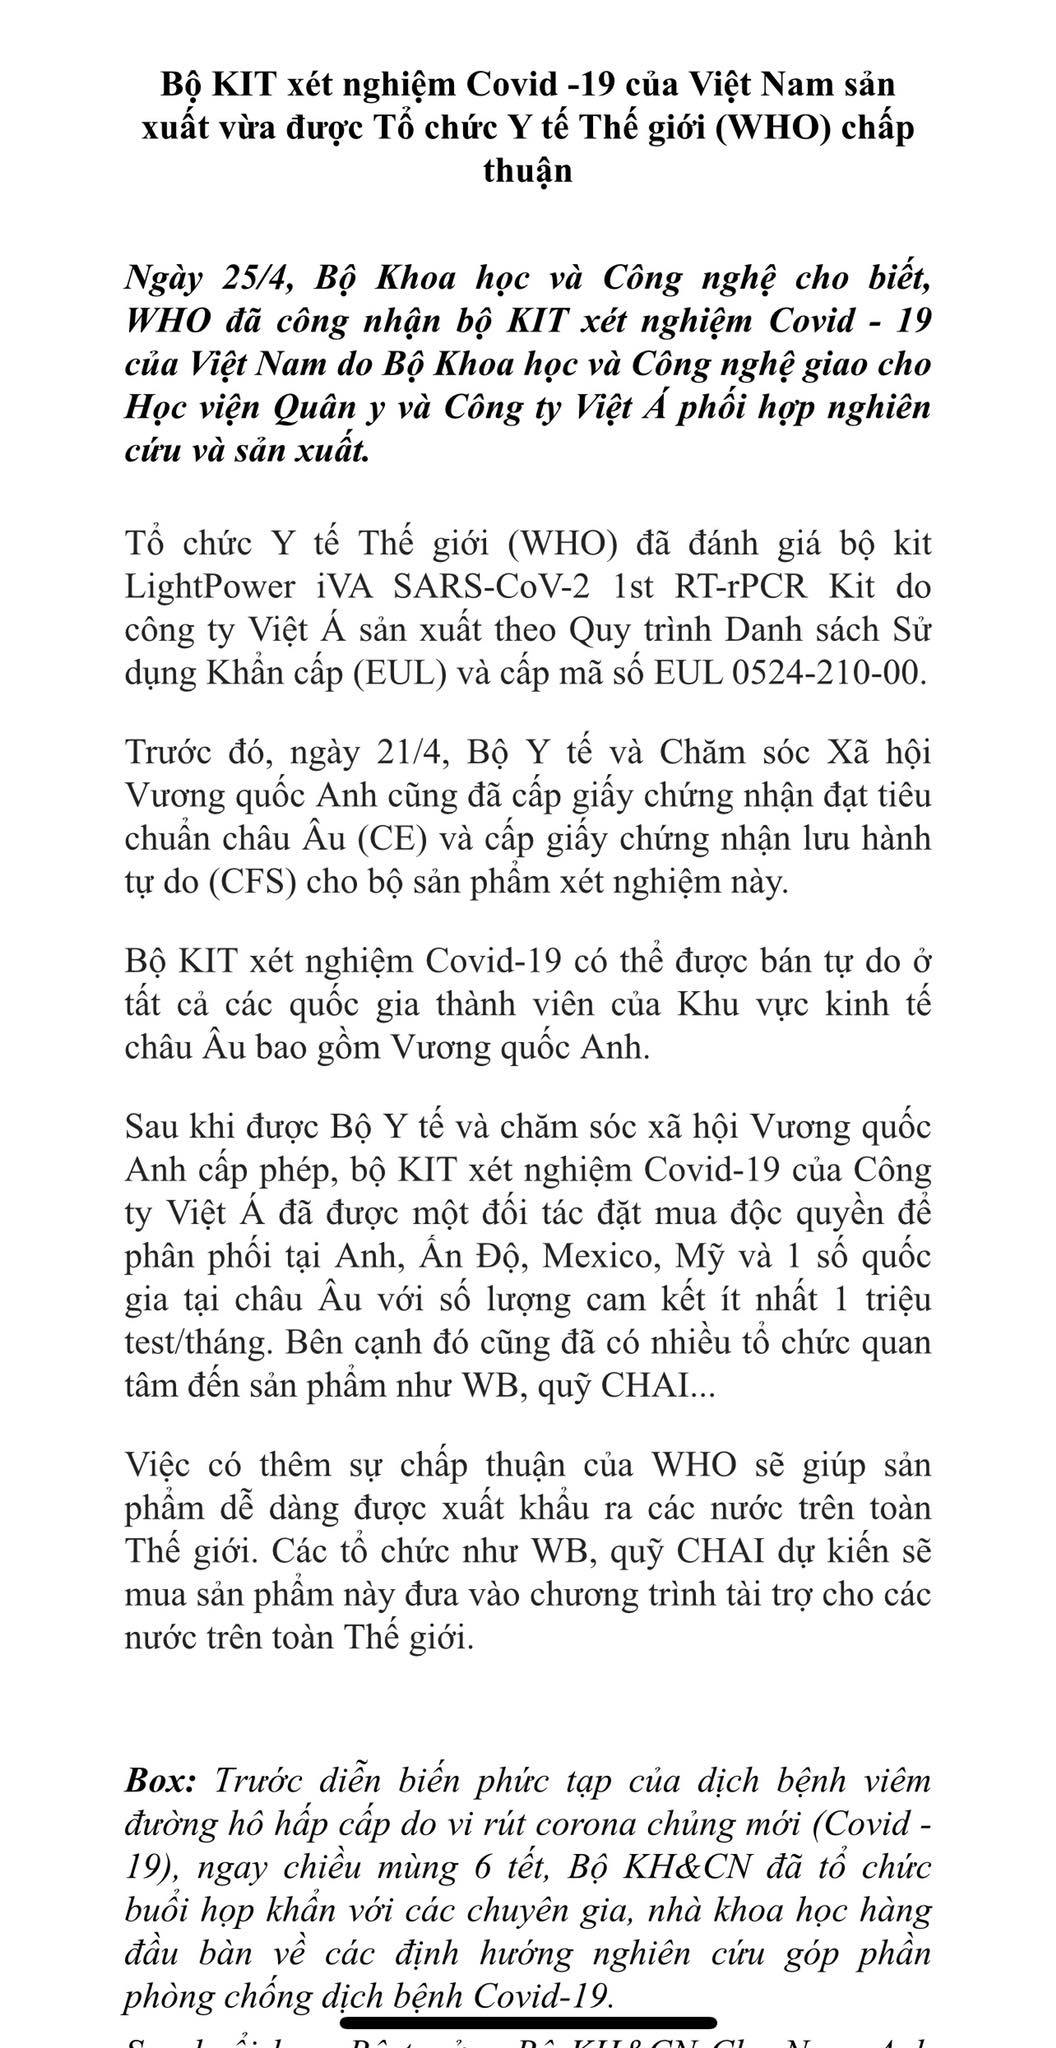 Bộ Khoa học và công nghệ: Thông tin sai WHO chấp thuận kit xét nghiệm của Việt Á là do... báo chí - Ảnh 2.